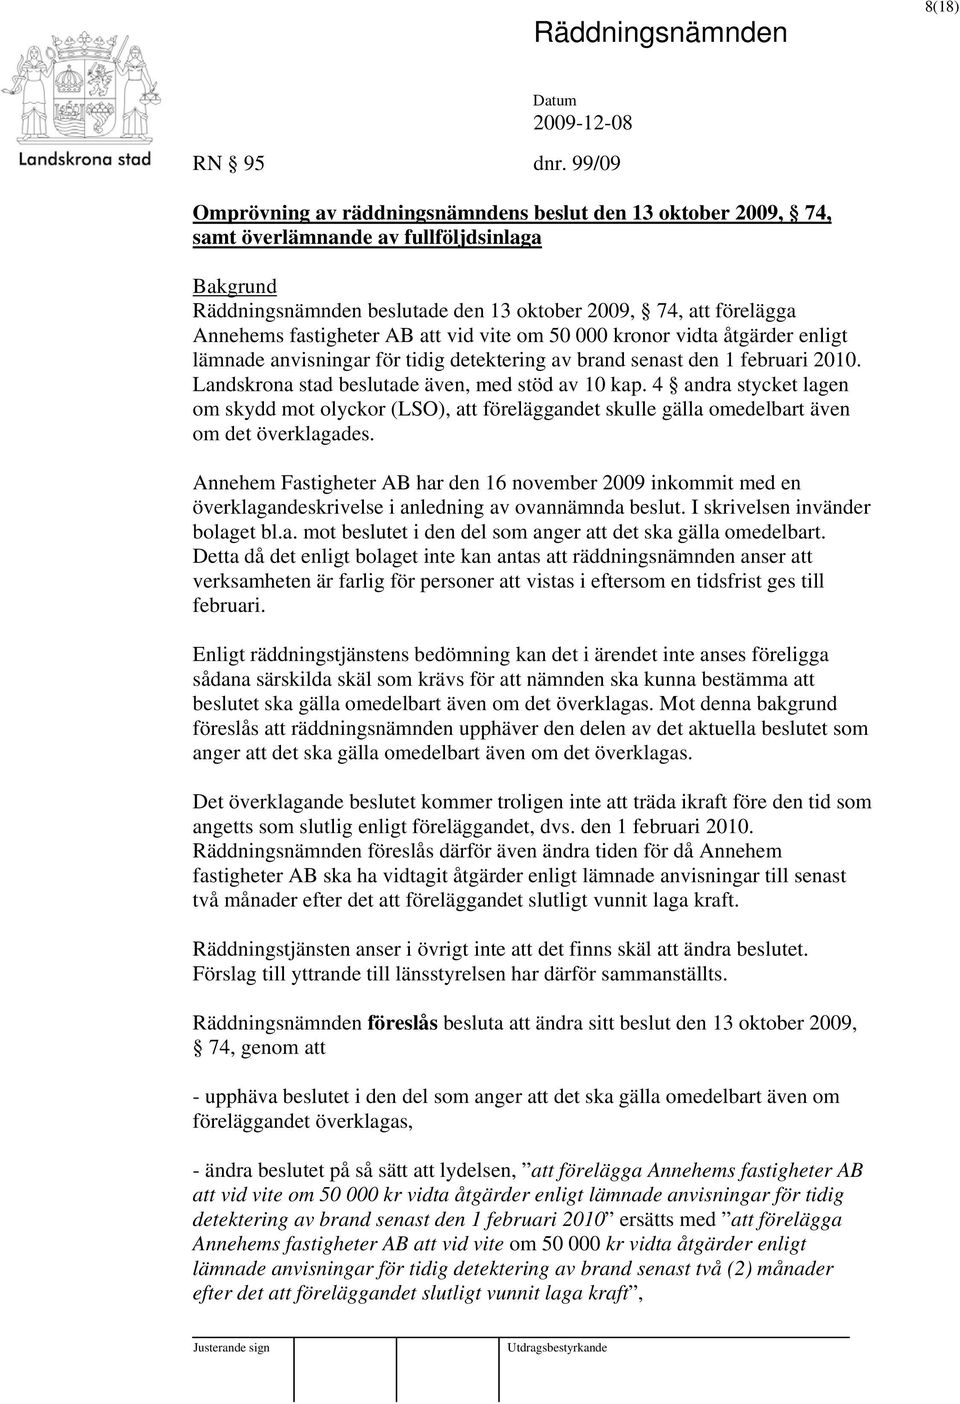 fastigheter AB att vid vite om 50 000 kronor vidta åtgärder enligt lämnade anvisningar för tidig detektering av brand senast den 1 februari 2010. Landskrona stad beslutade även, med stöd av 10 kap.